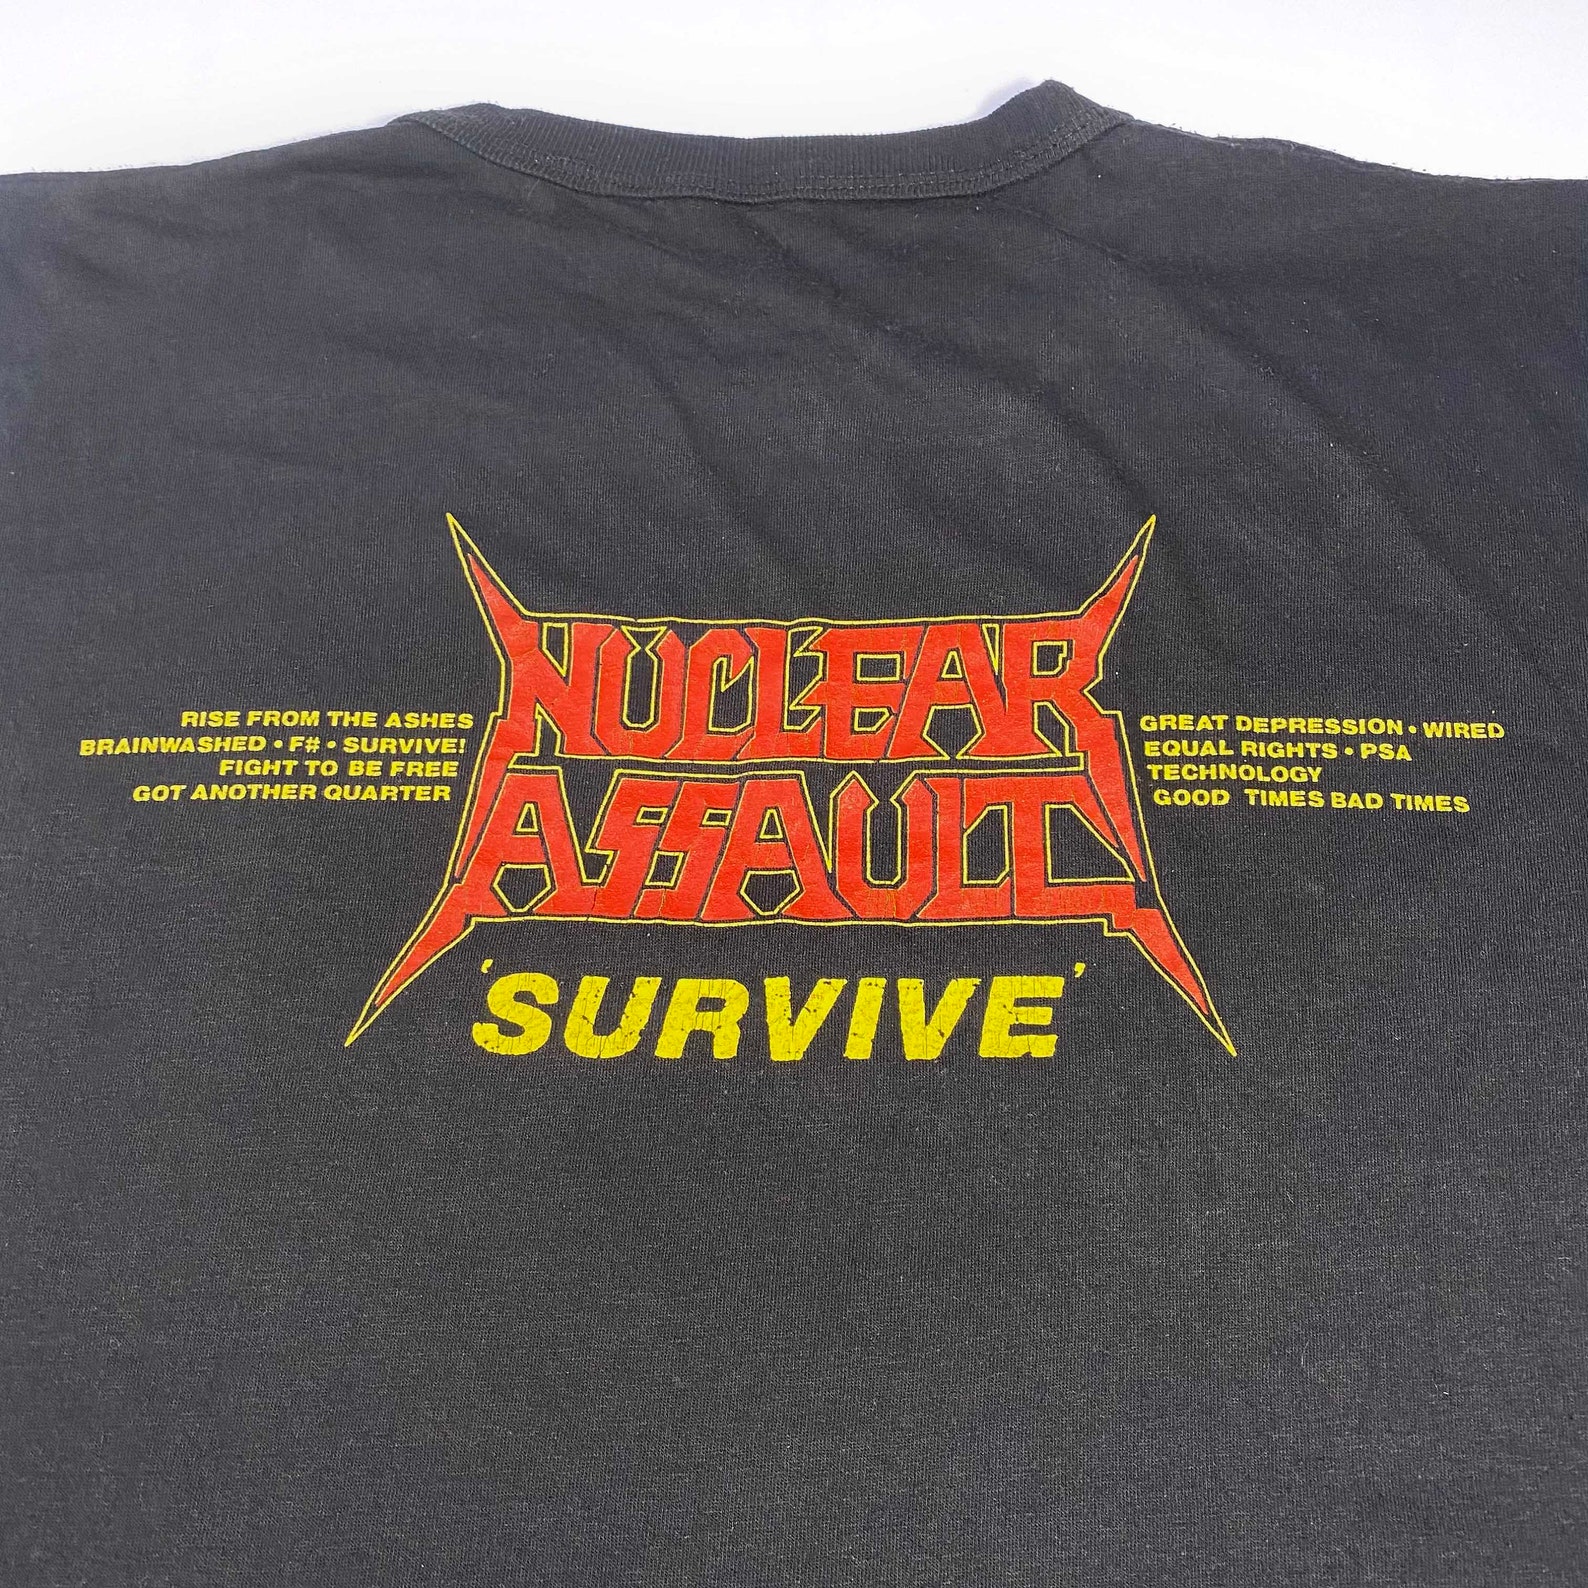 1988 Nuclear Assault 'Survive' vintage t-shirt | Etsy